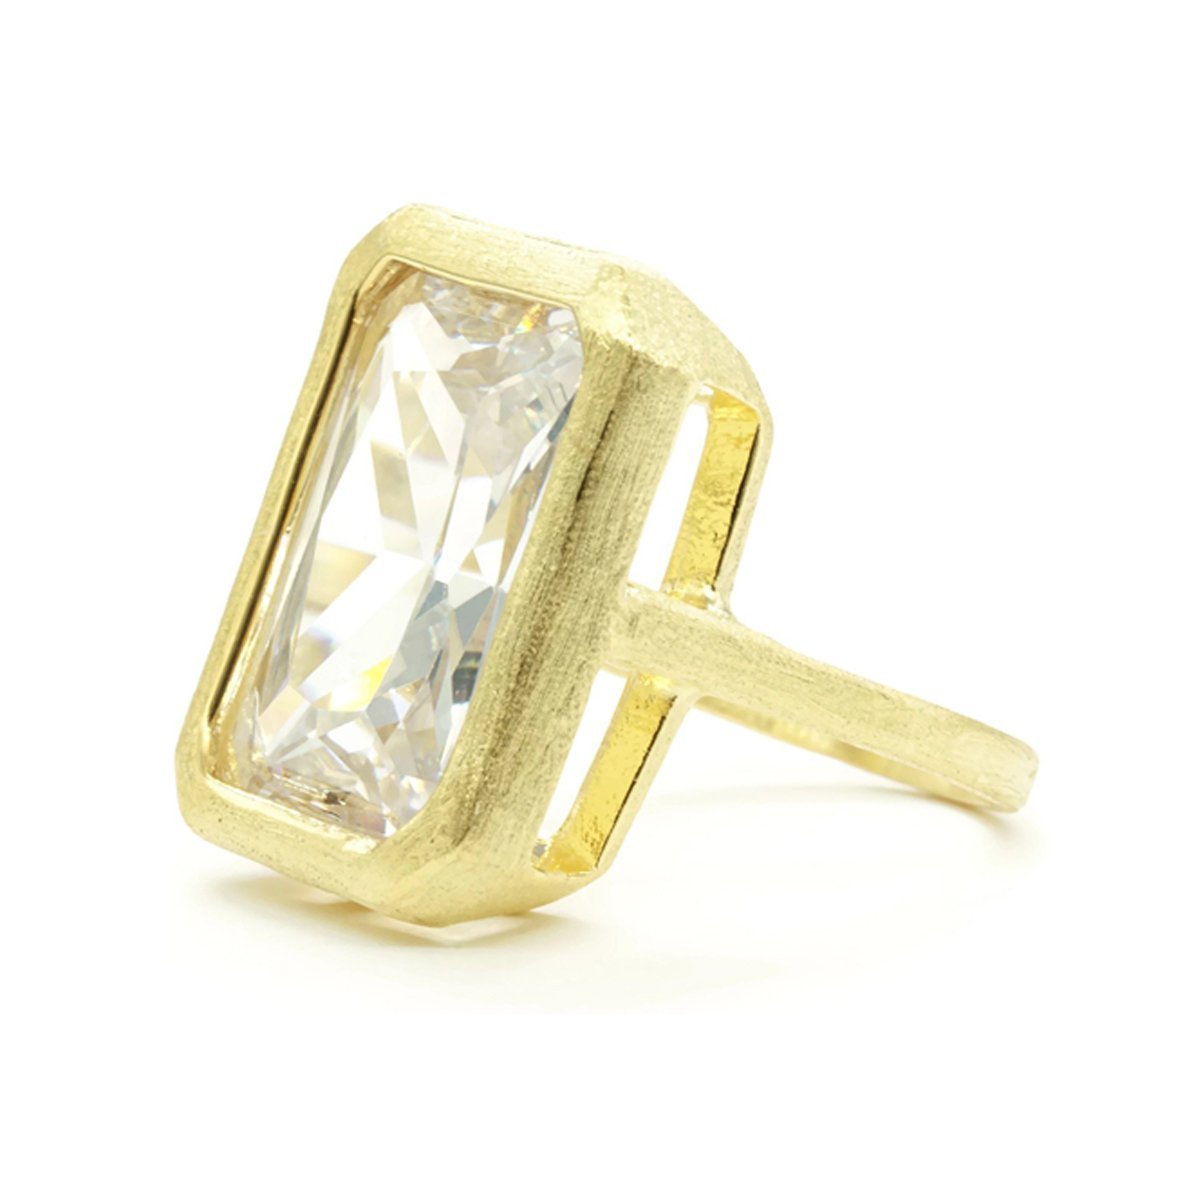 Huge Bezel-Set Emerald Cut Clear Brushed 14K Gold Ring